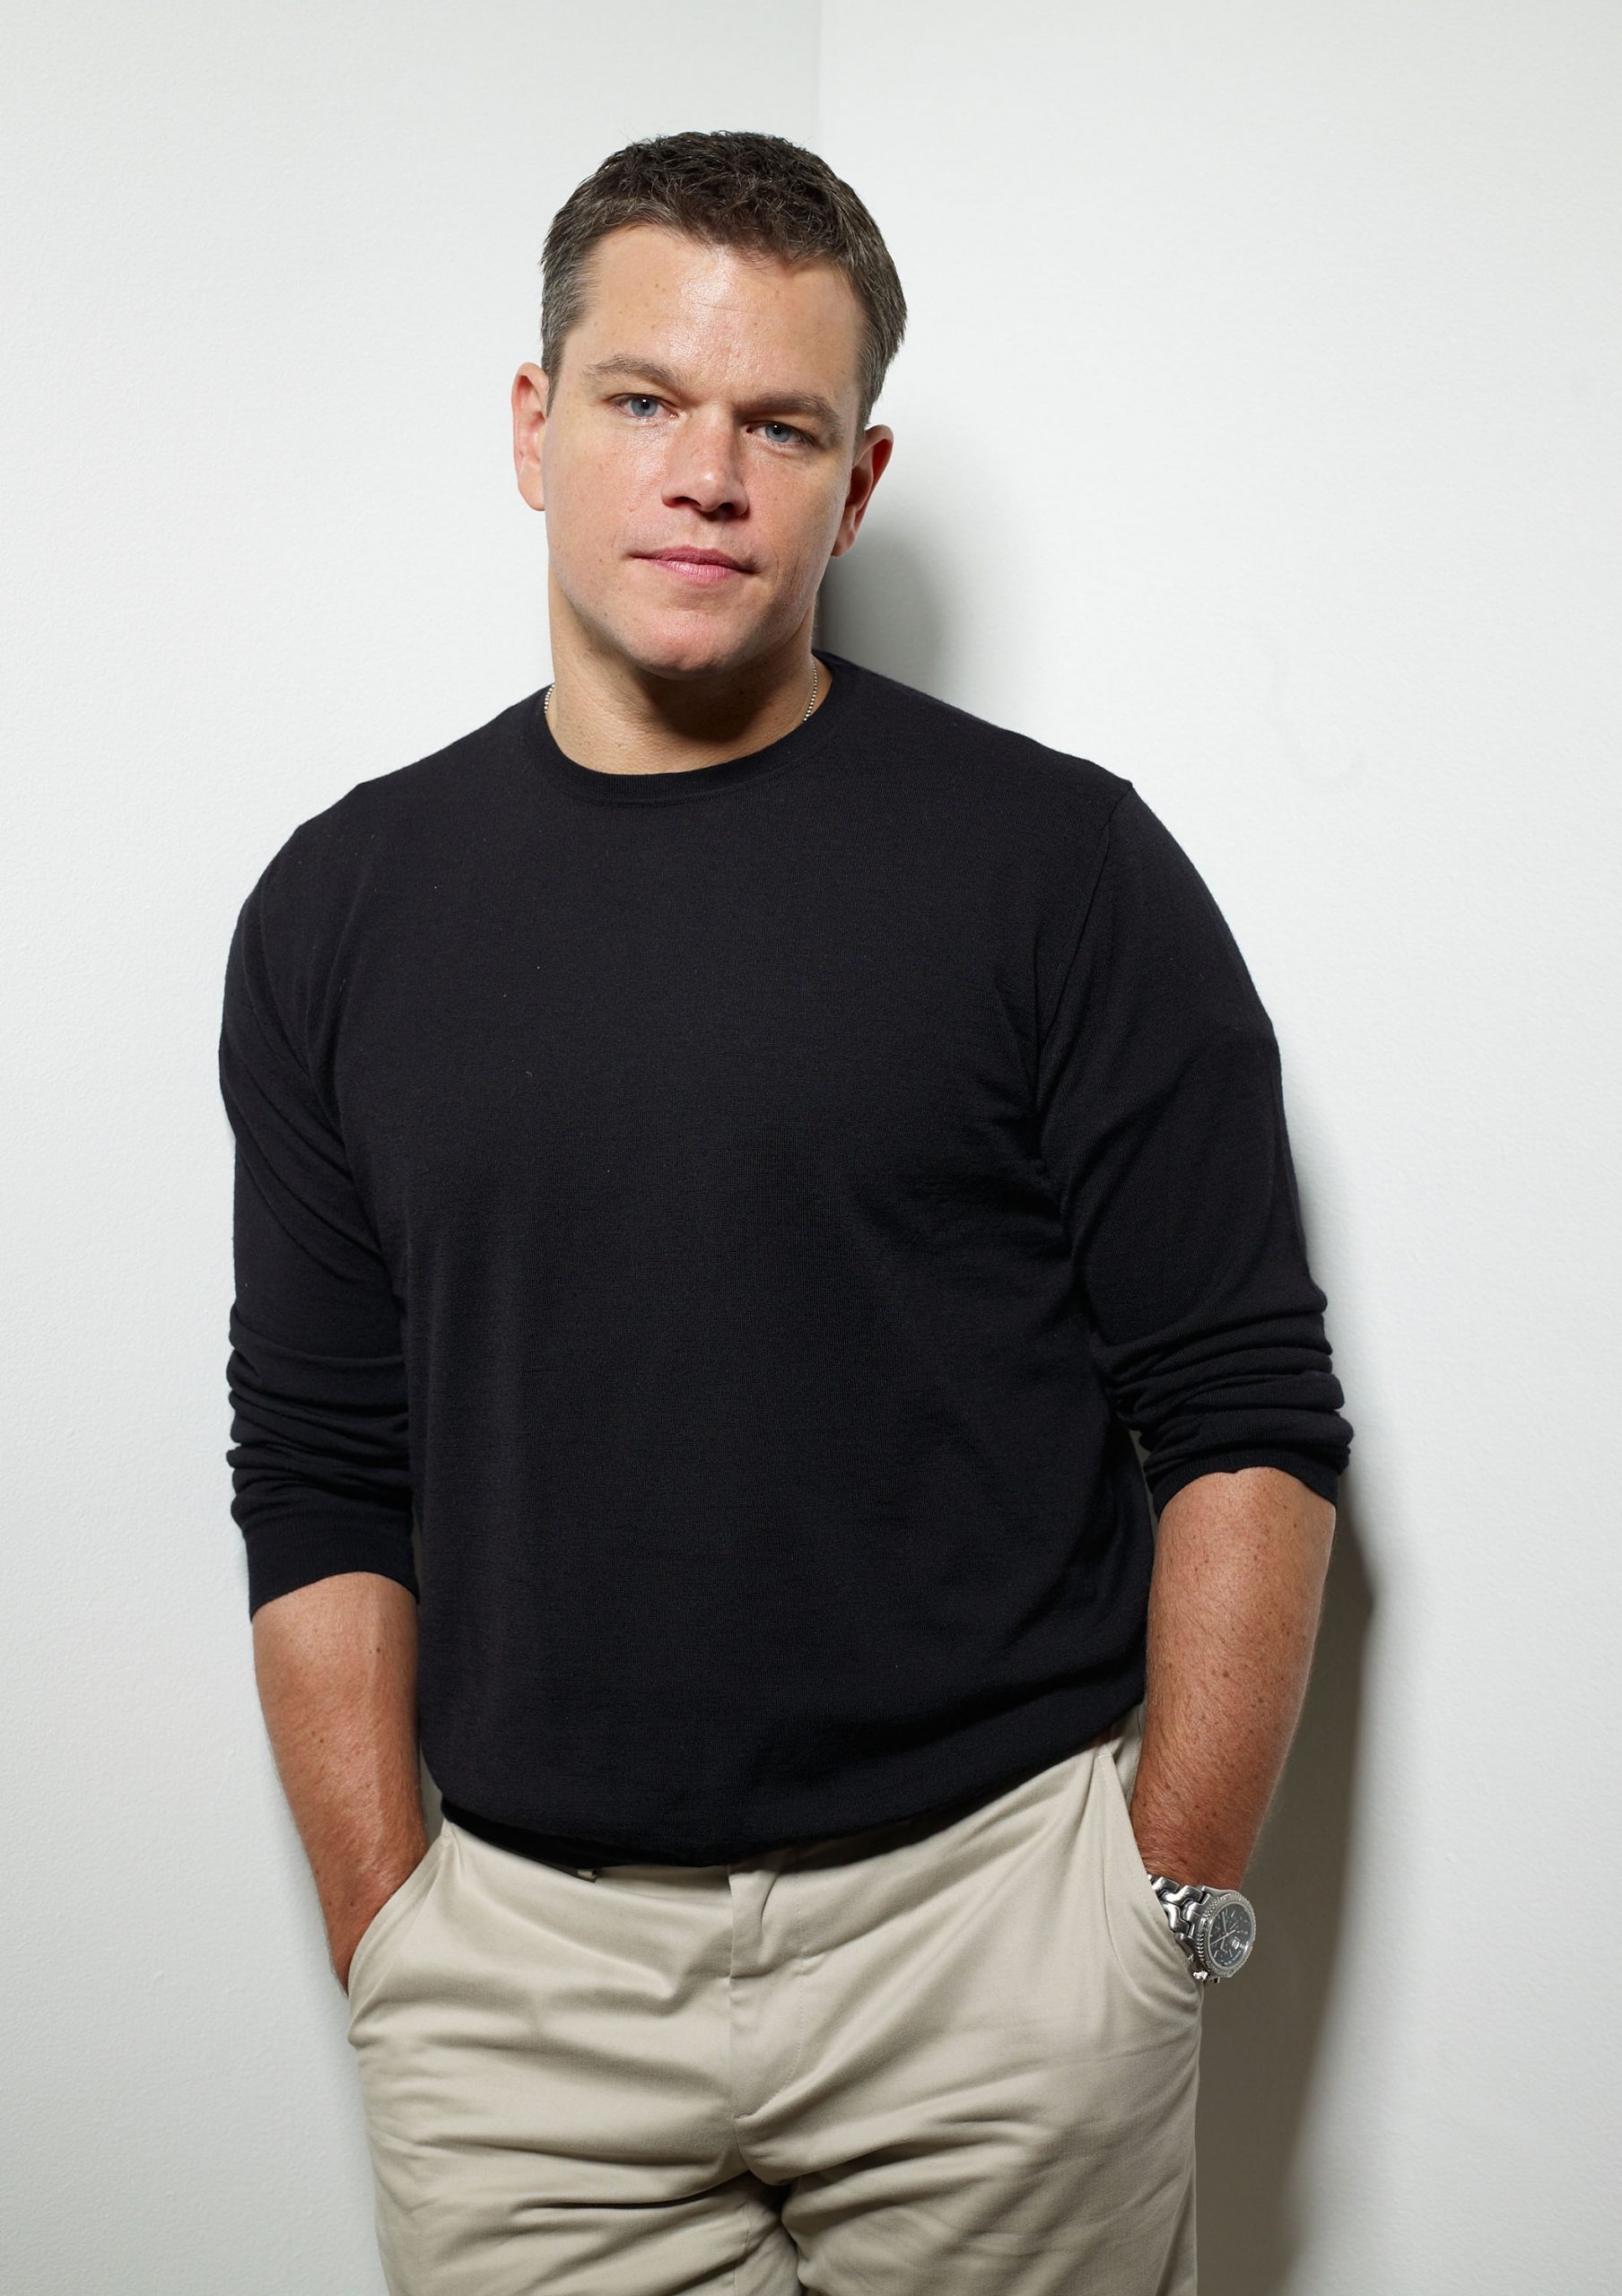 Matt Damon photo 2